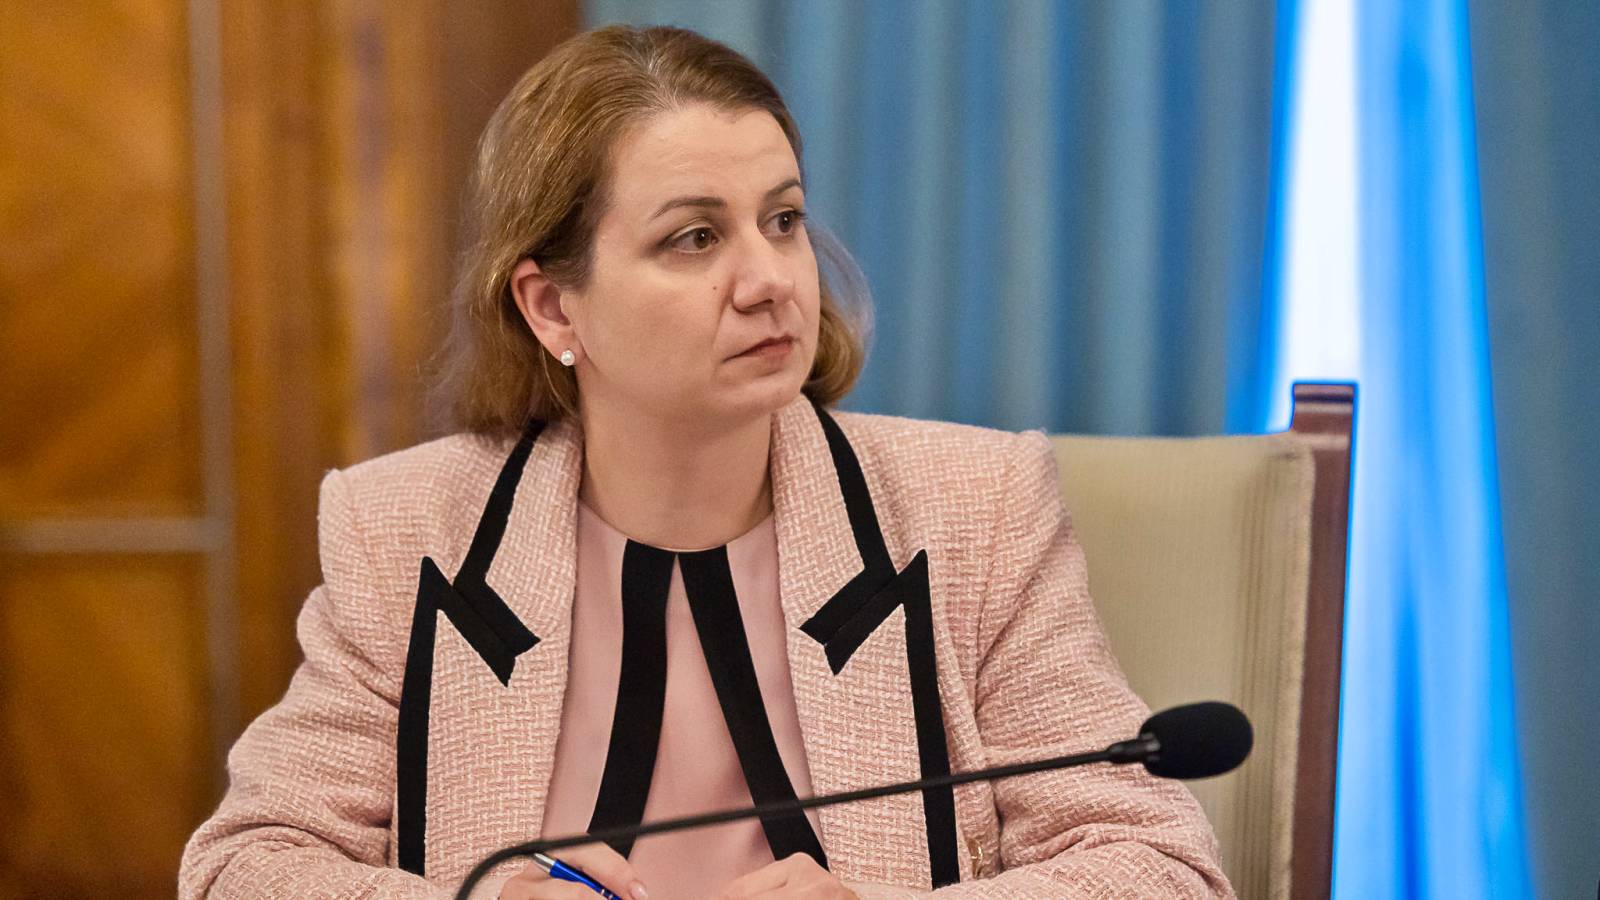 El Ministro de Educación revela oficialmente dos medidas IMPORTANTES para las escuelas y los estudiantes de Rumania